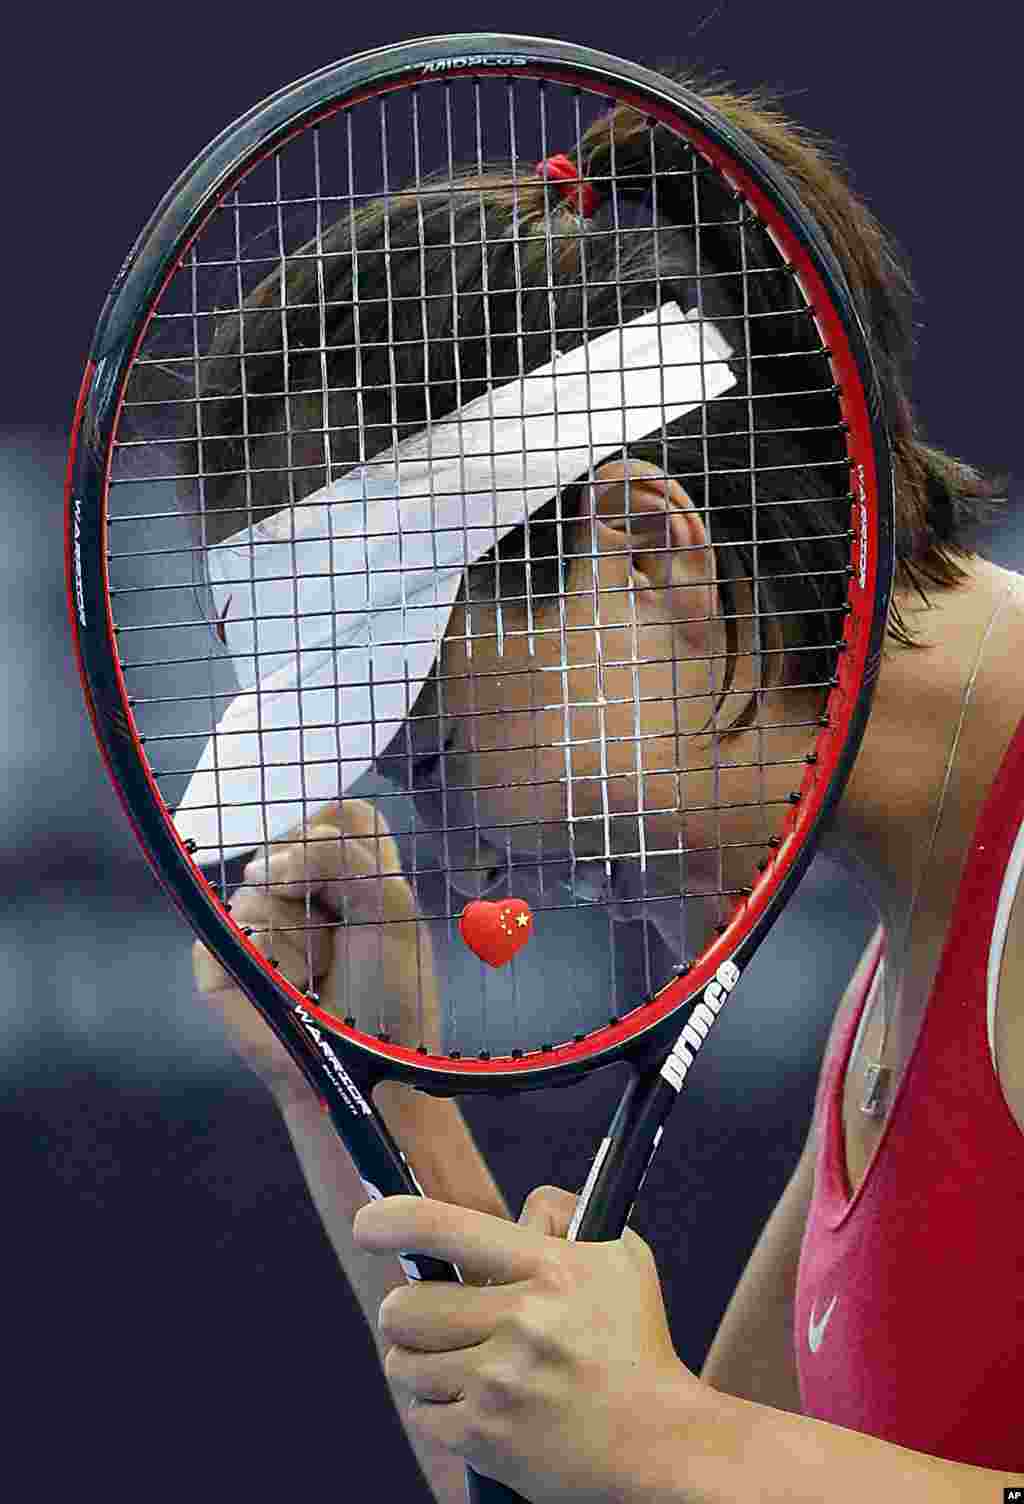 中国网球名将彭帅在北京举行的中国网球公开赛中战胜美国的维纳斯&amp;middot;威廉姆斯而赢得女子单打比赛冠军之后（2016年10月3日）。2018年8月8日网球公正性小组宣布， 彭帅因意图使用金钱利诱双打搭档退赛被判禁赛三到六个月，罚款一万美元。如果不再有违规行为，她最早在11月8日就可以恢复比赛。​